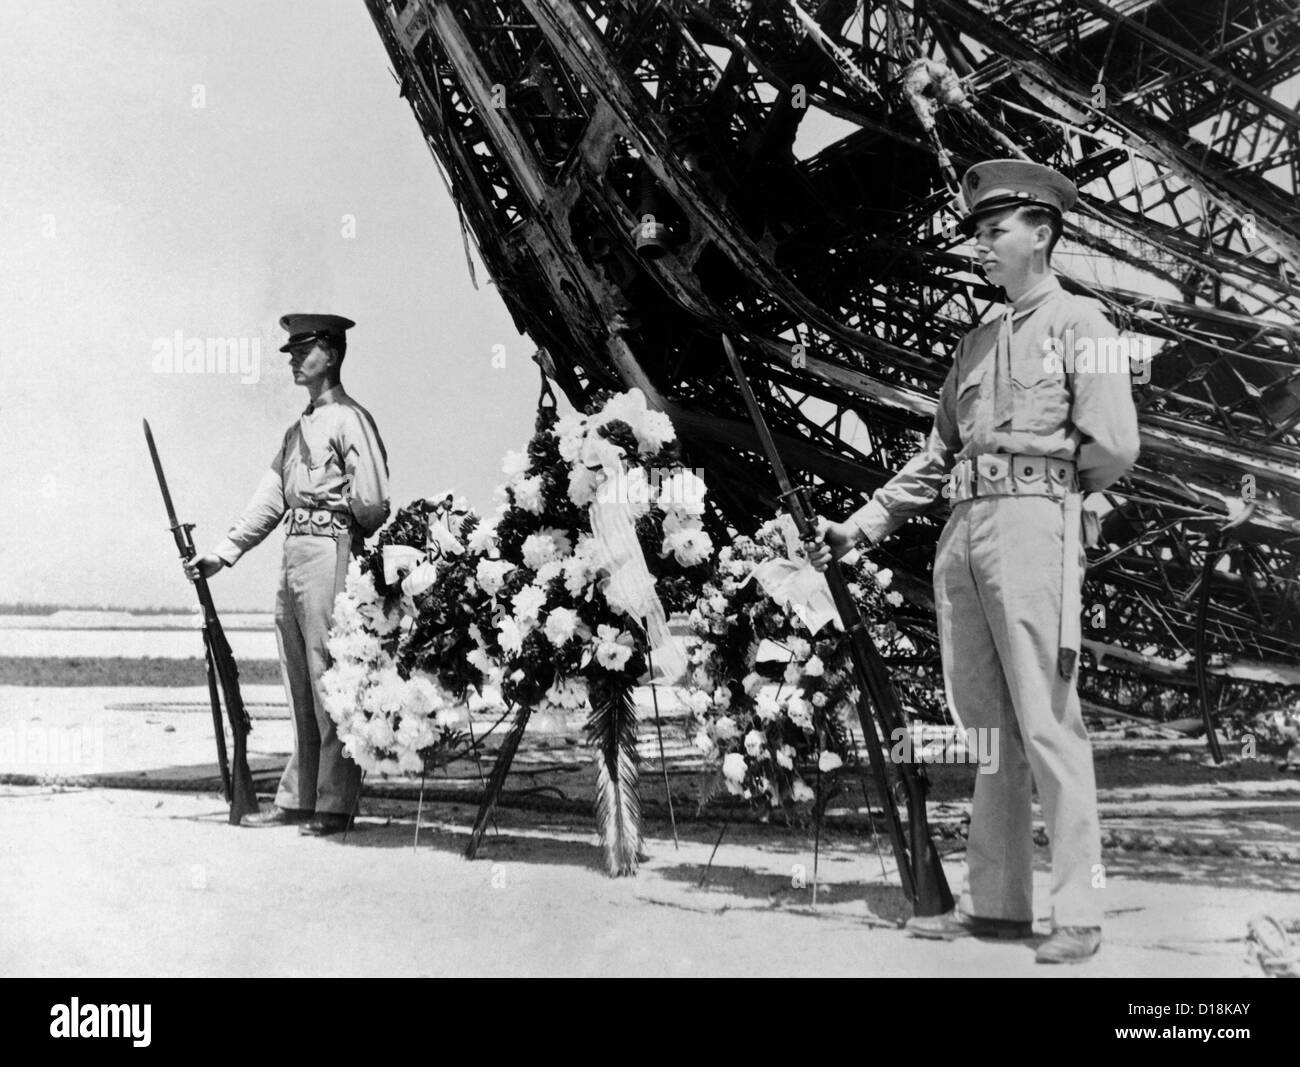 Hindenburg tot sind am Memorial Day geehrt. Zwei US-Marines bewachen am Kranz Ort am Bug der Ill-Fated Stockfoto